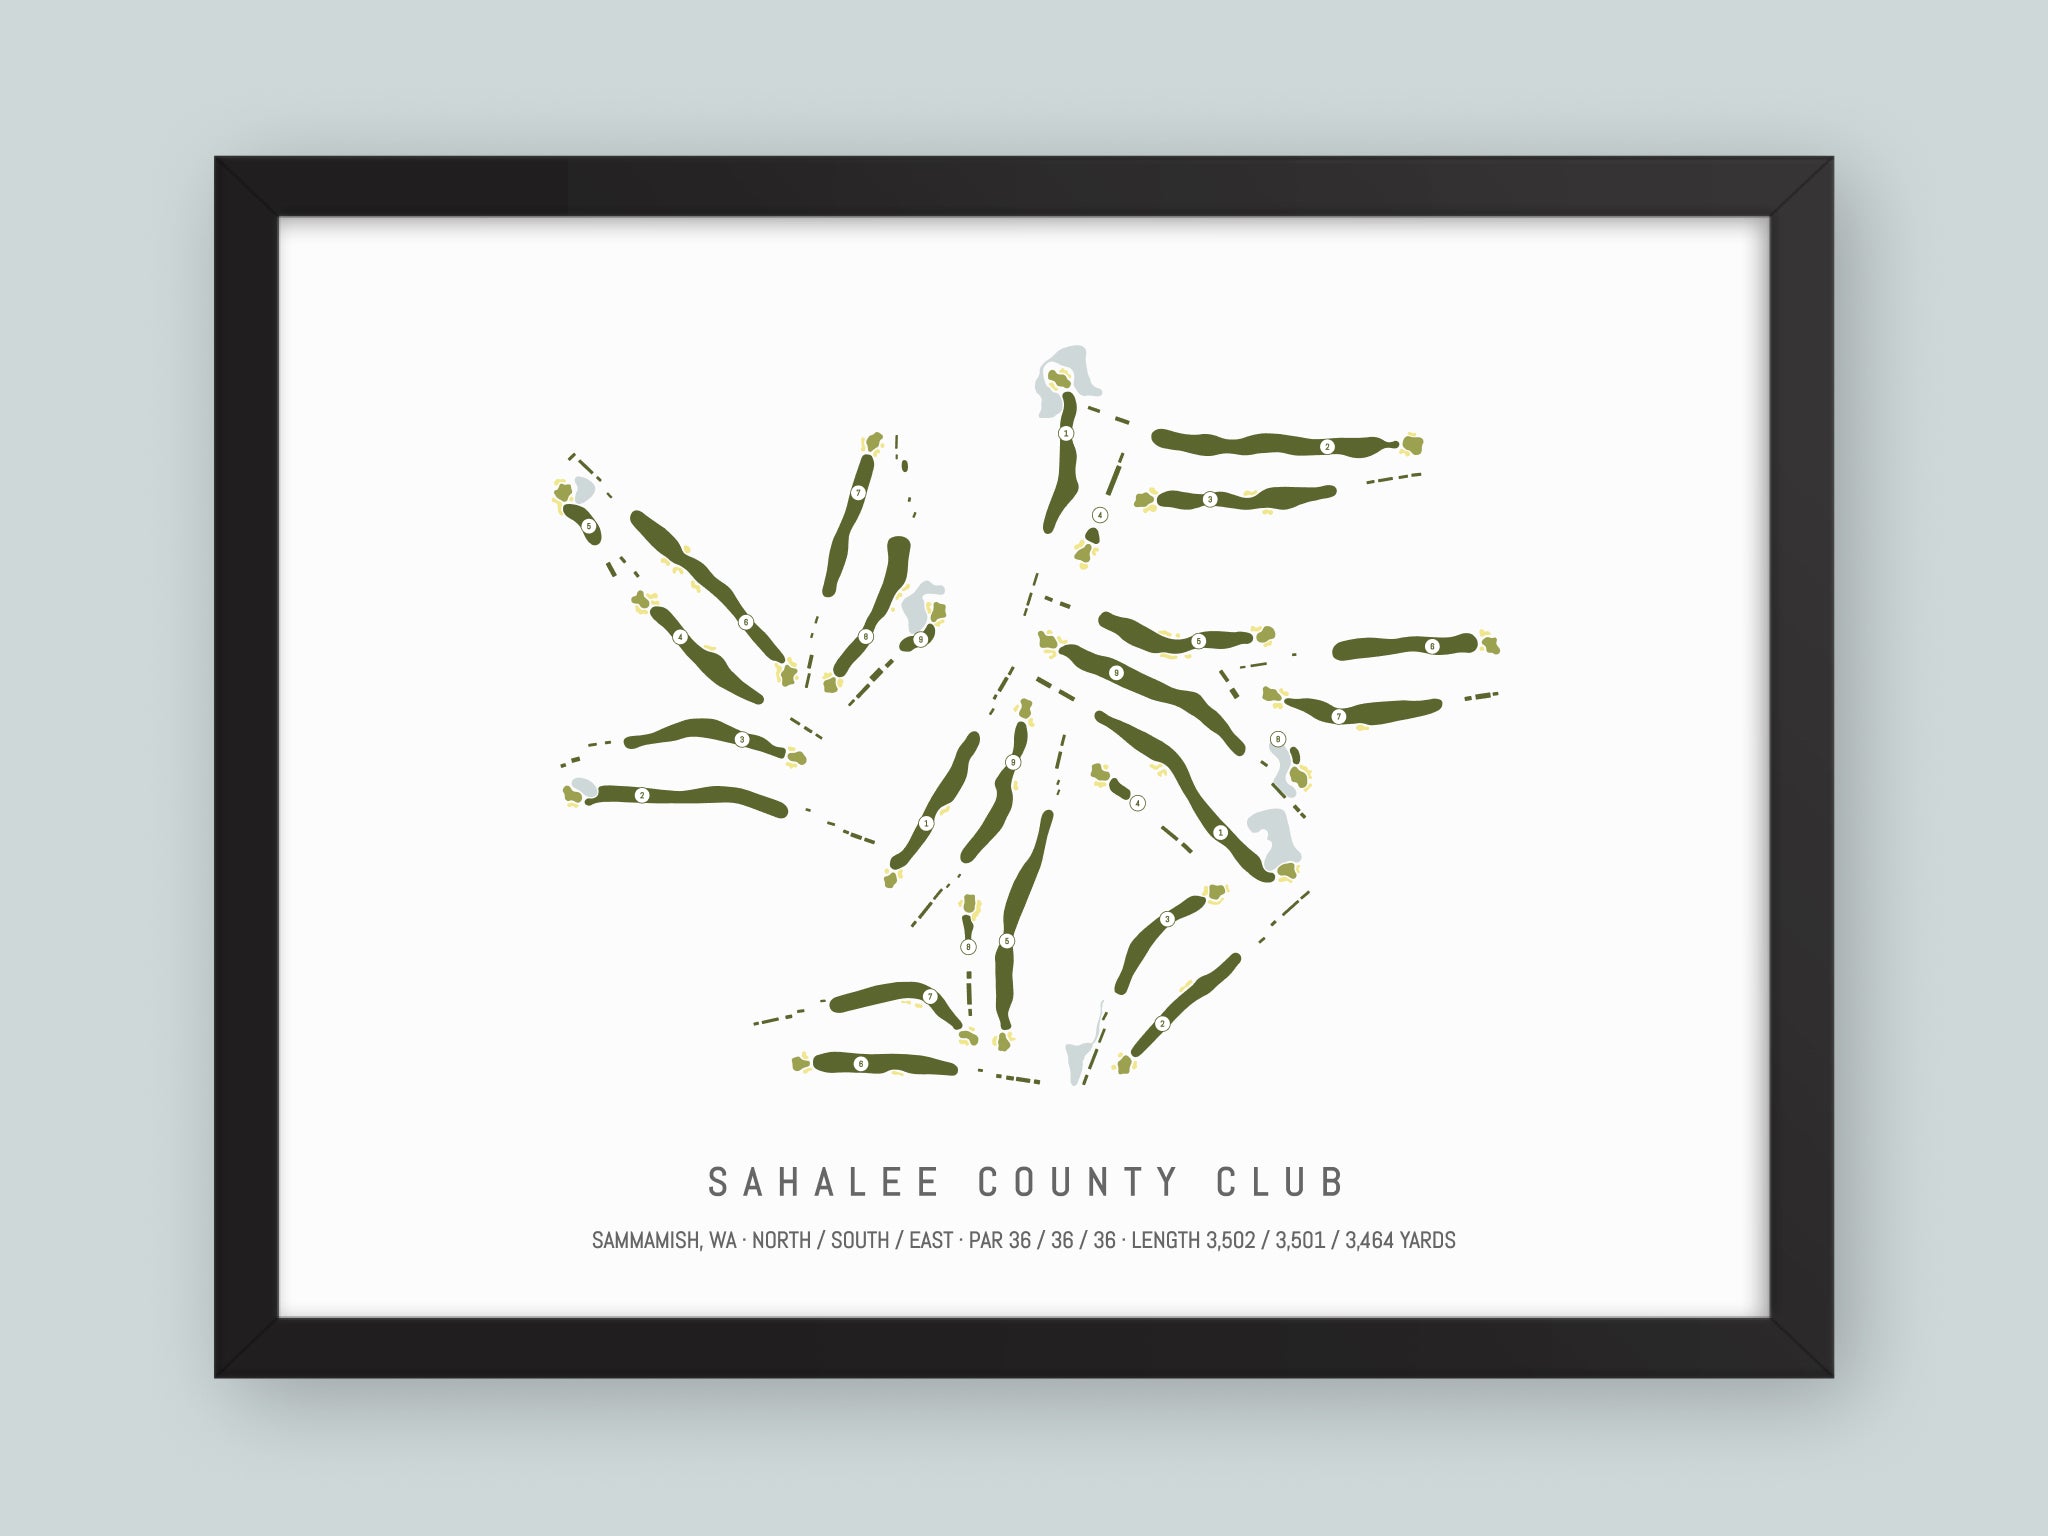 Sahalee-County-Club-WA--Black-Frame-24x18-With-Hole-Numbers